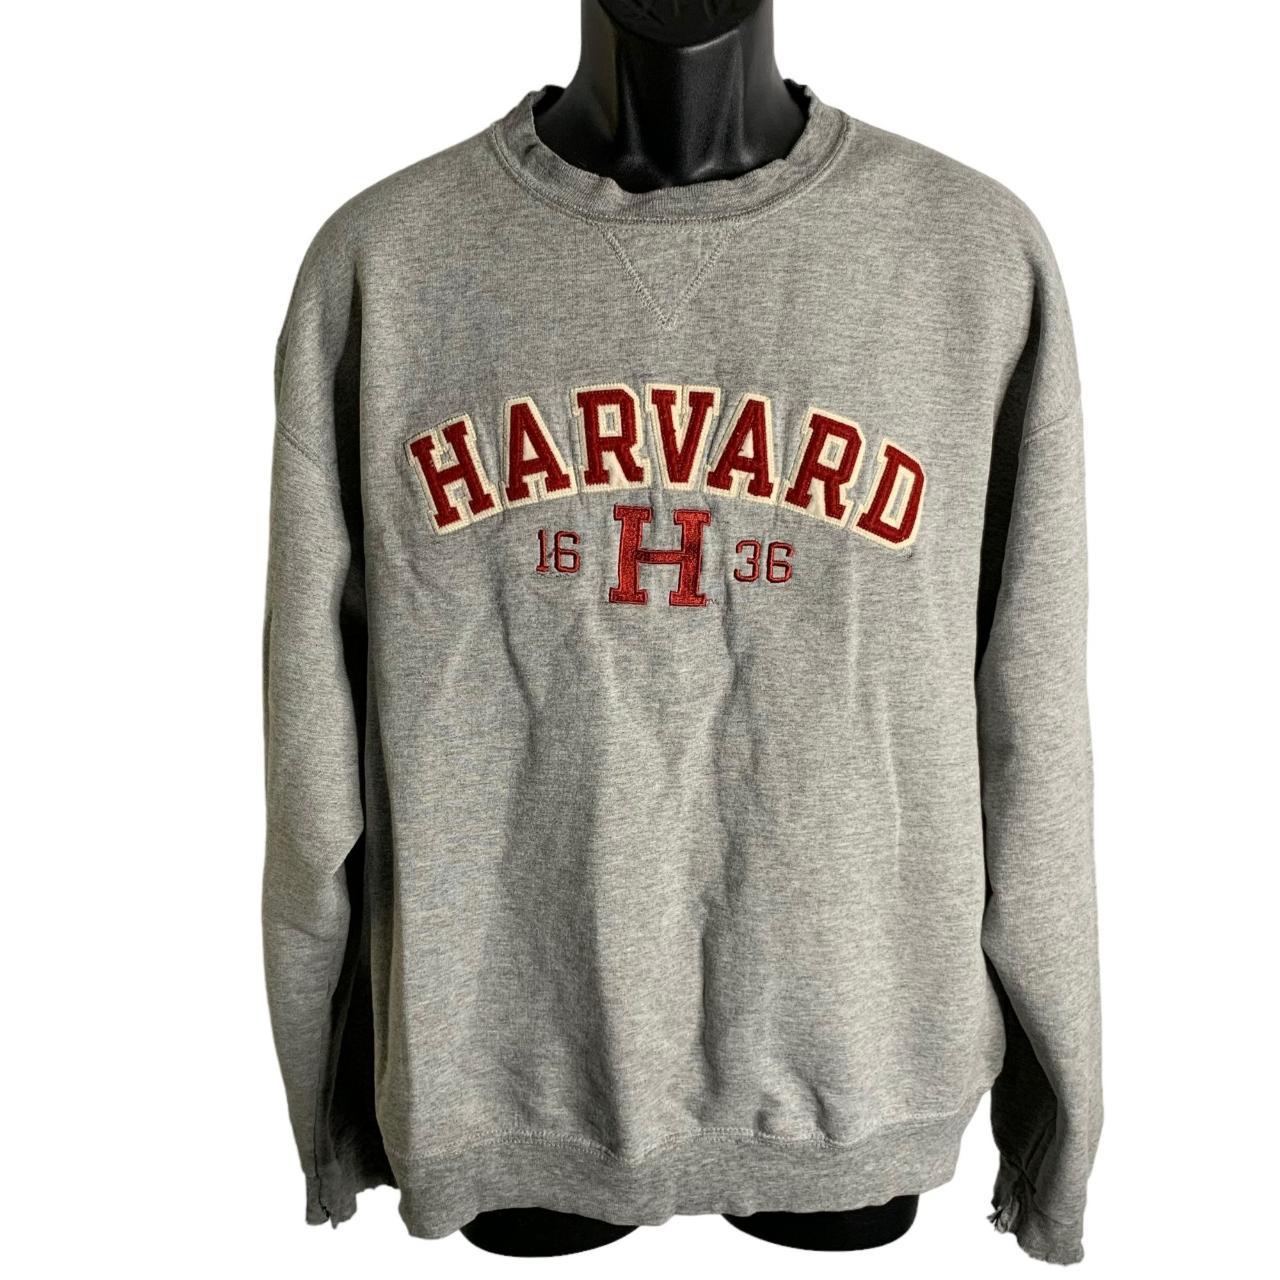 Vintage 90s Y2K Champion Harvard Sweatshirt L Grey... - Depop